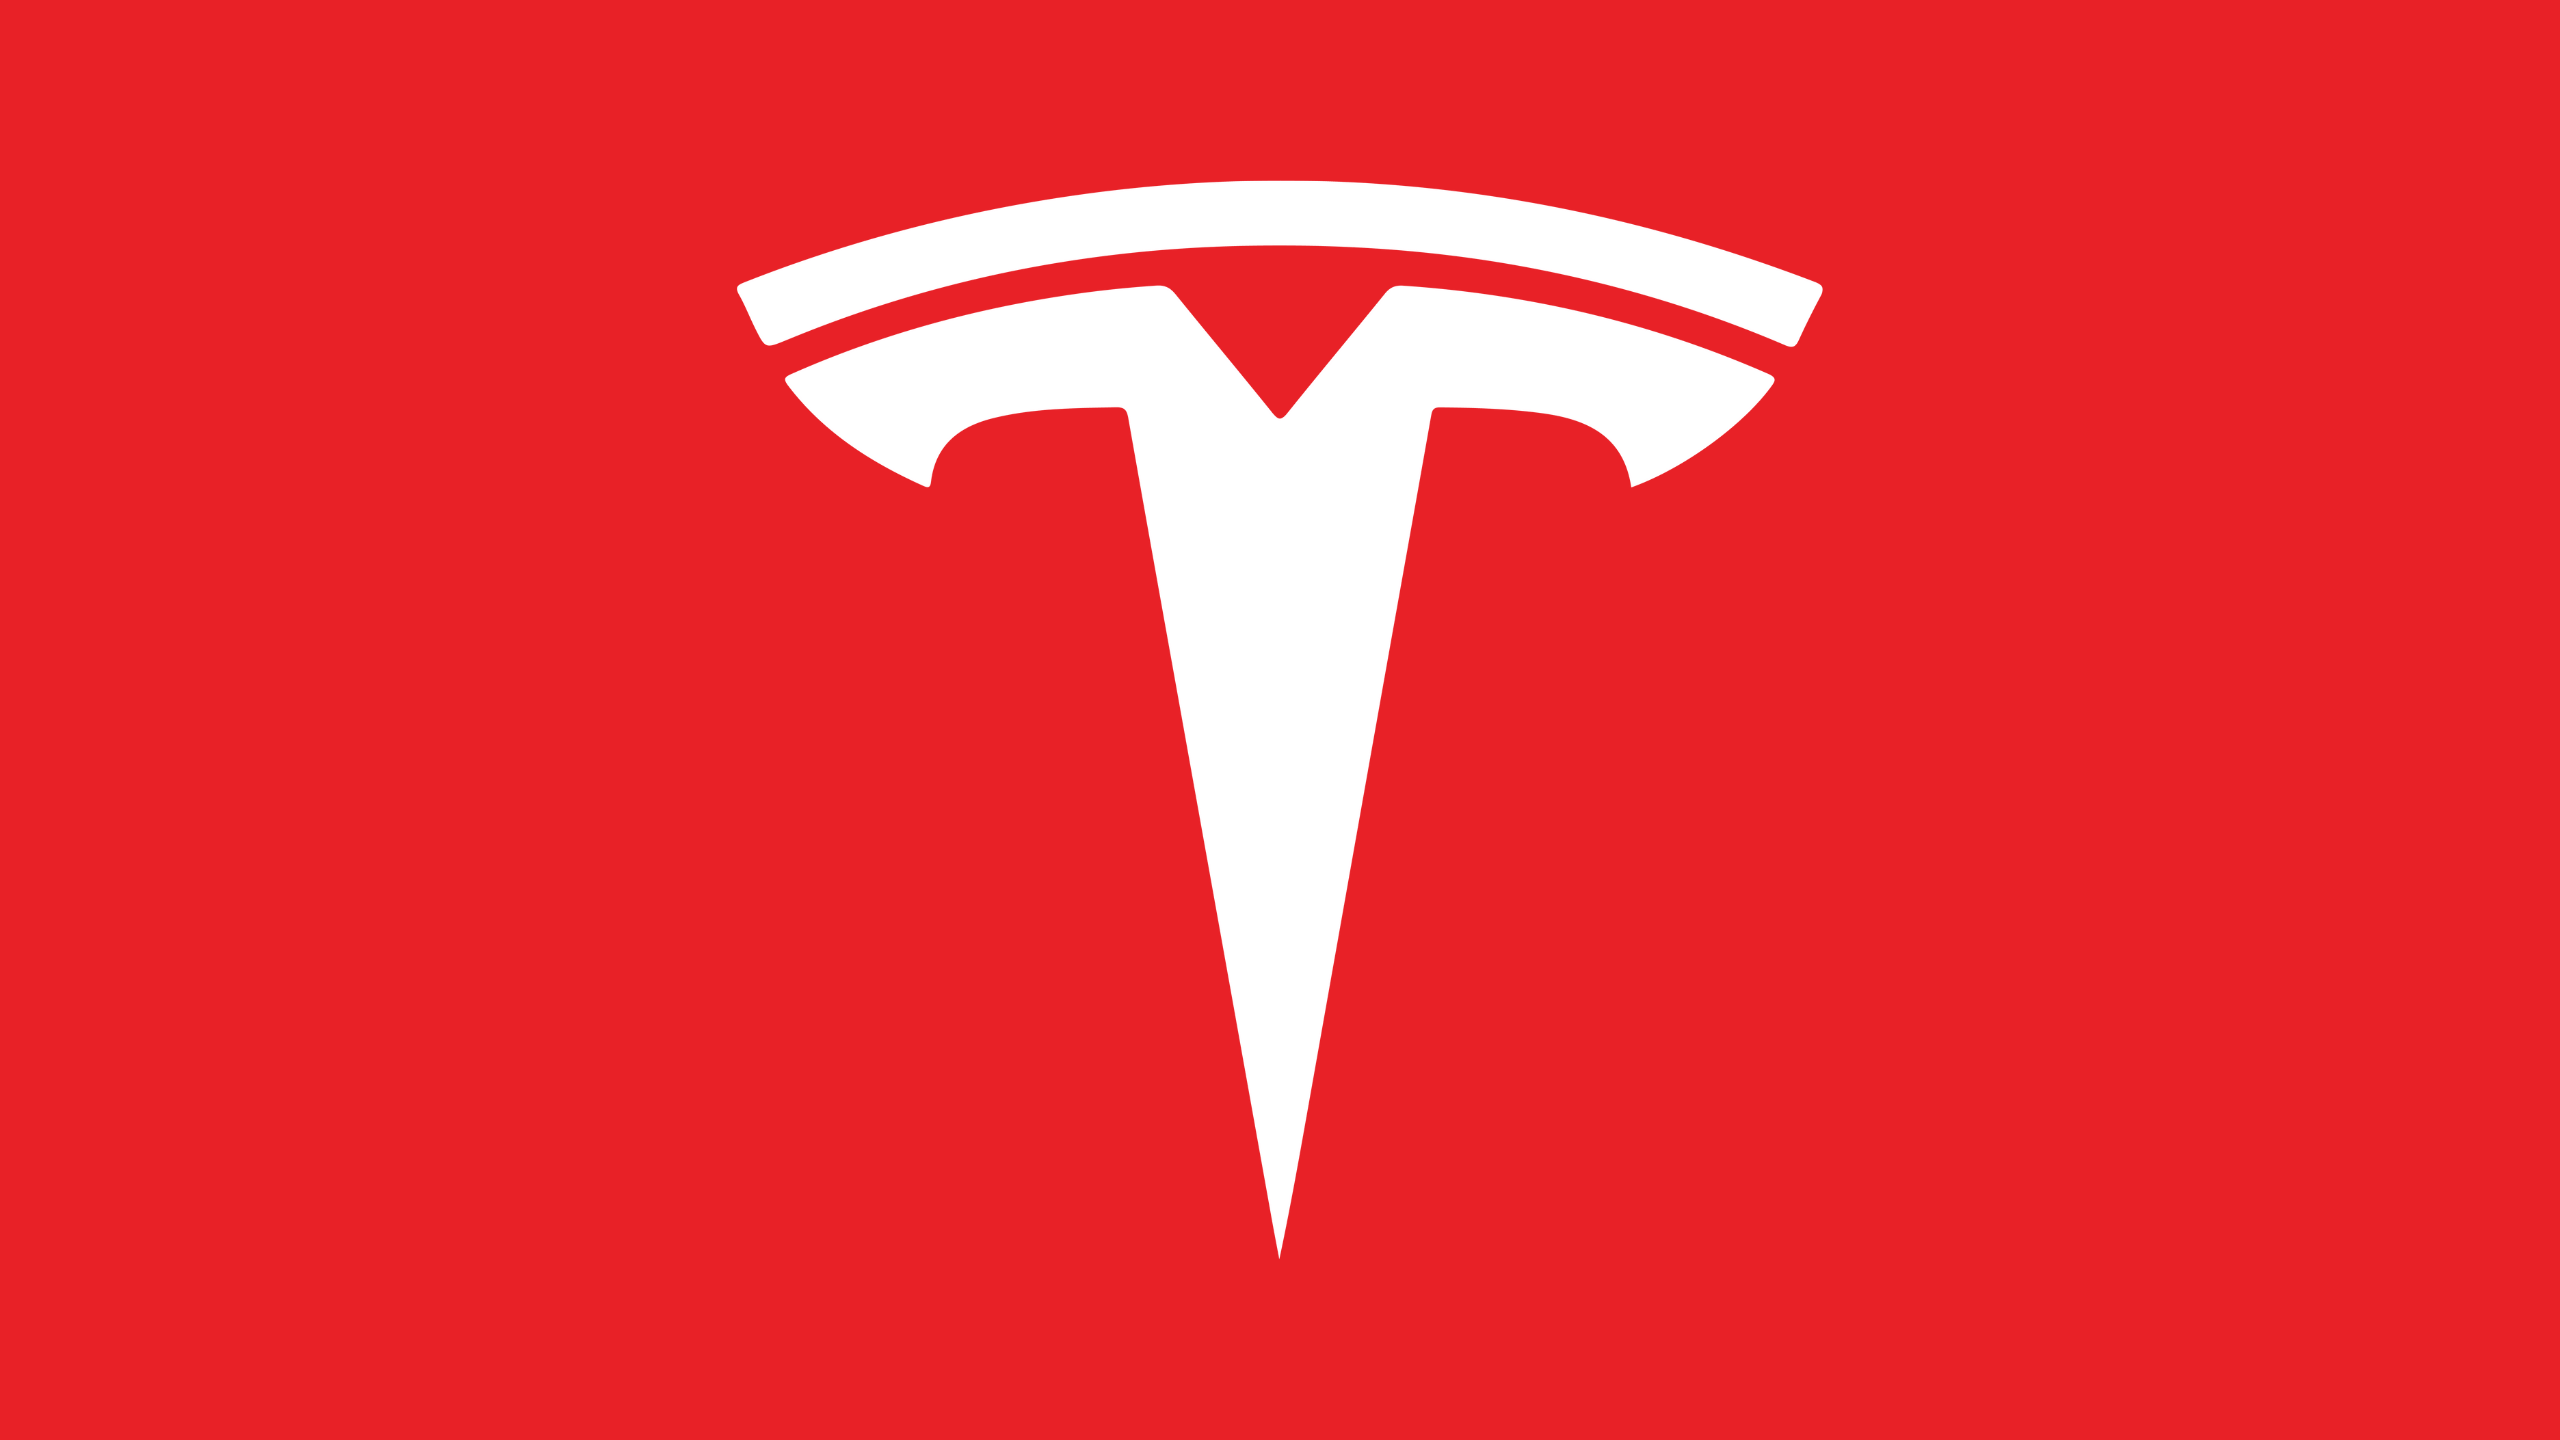 Tesla ($TSLA) short sellers verloren de afgelopen 30 dagen $ 1,55 miljard